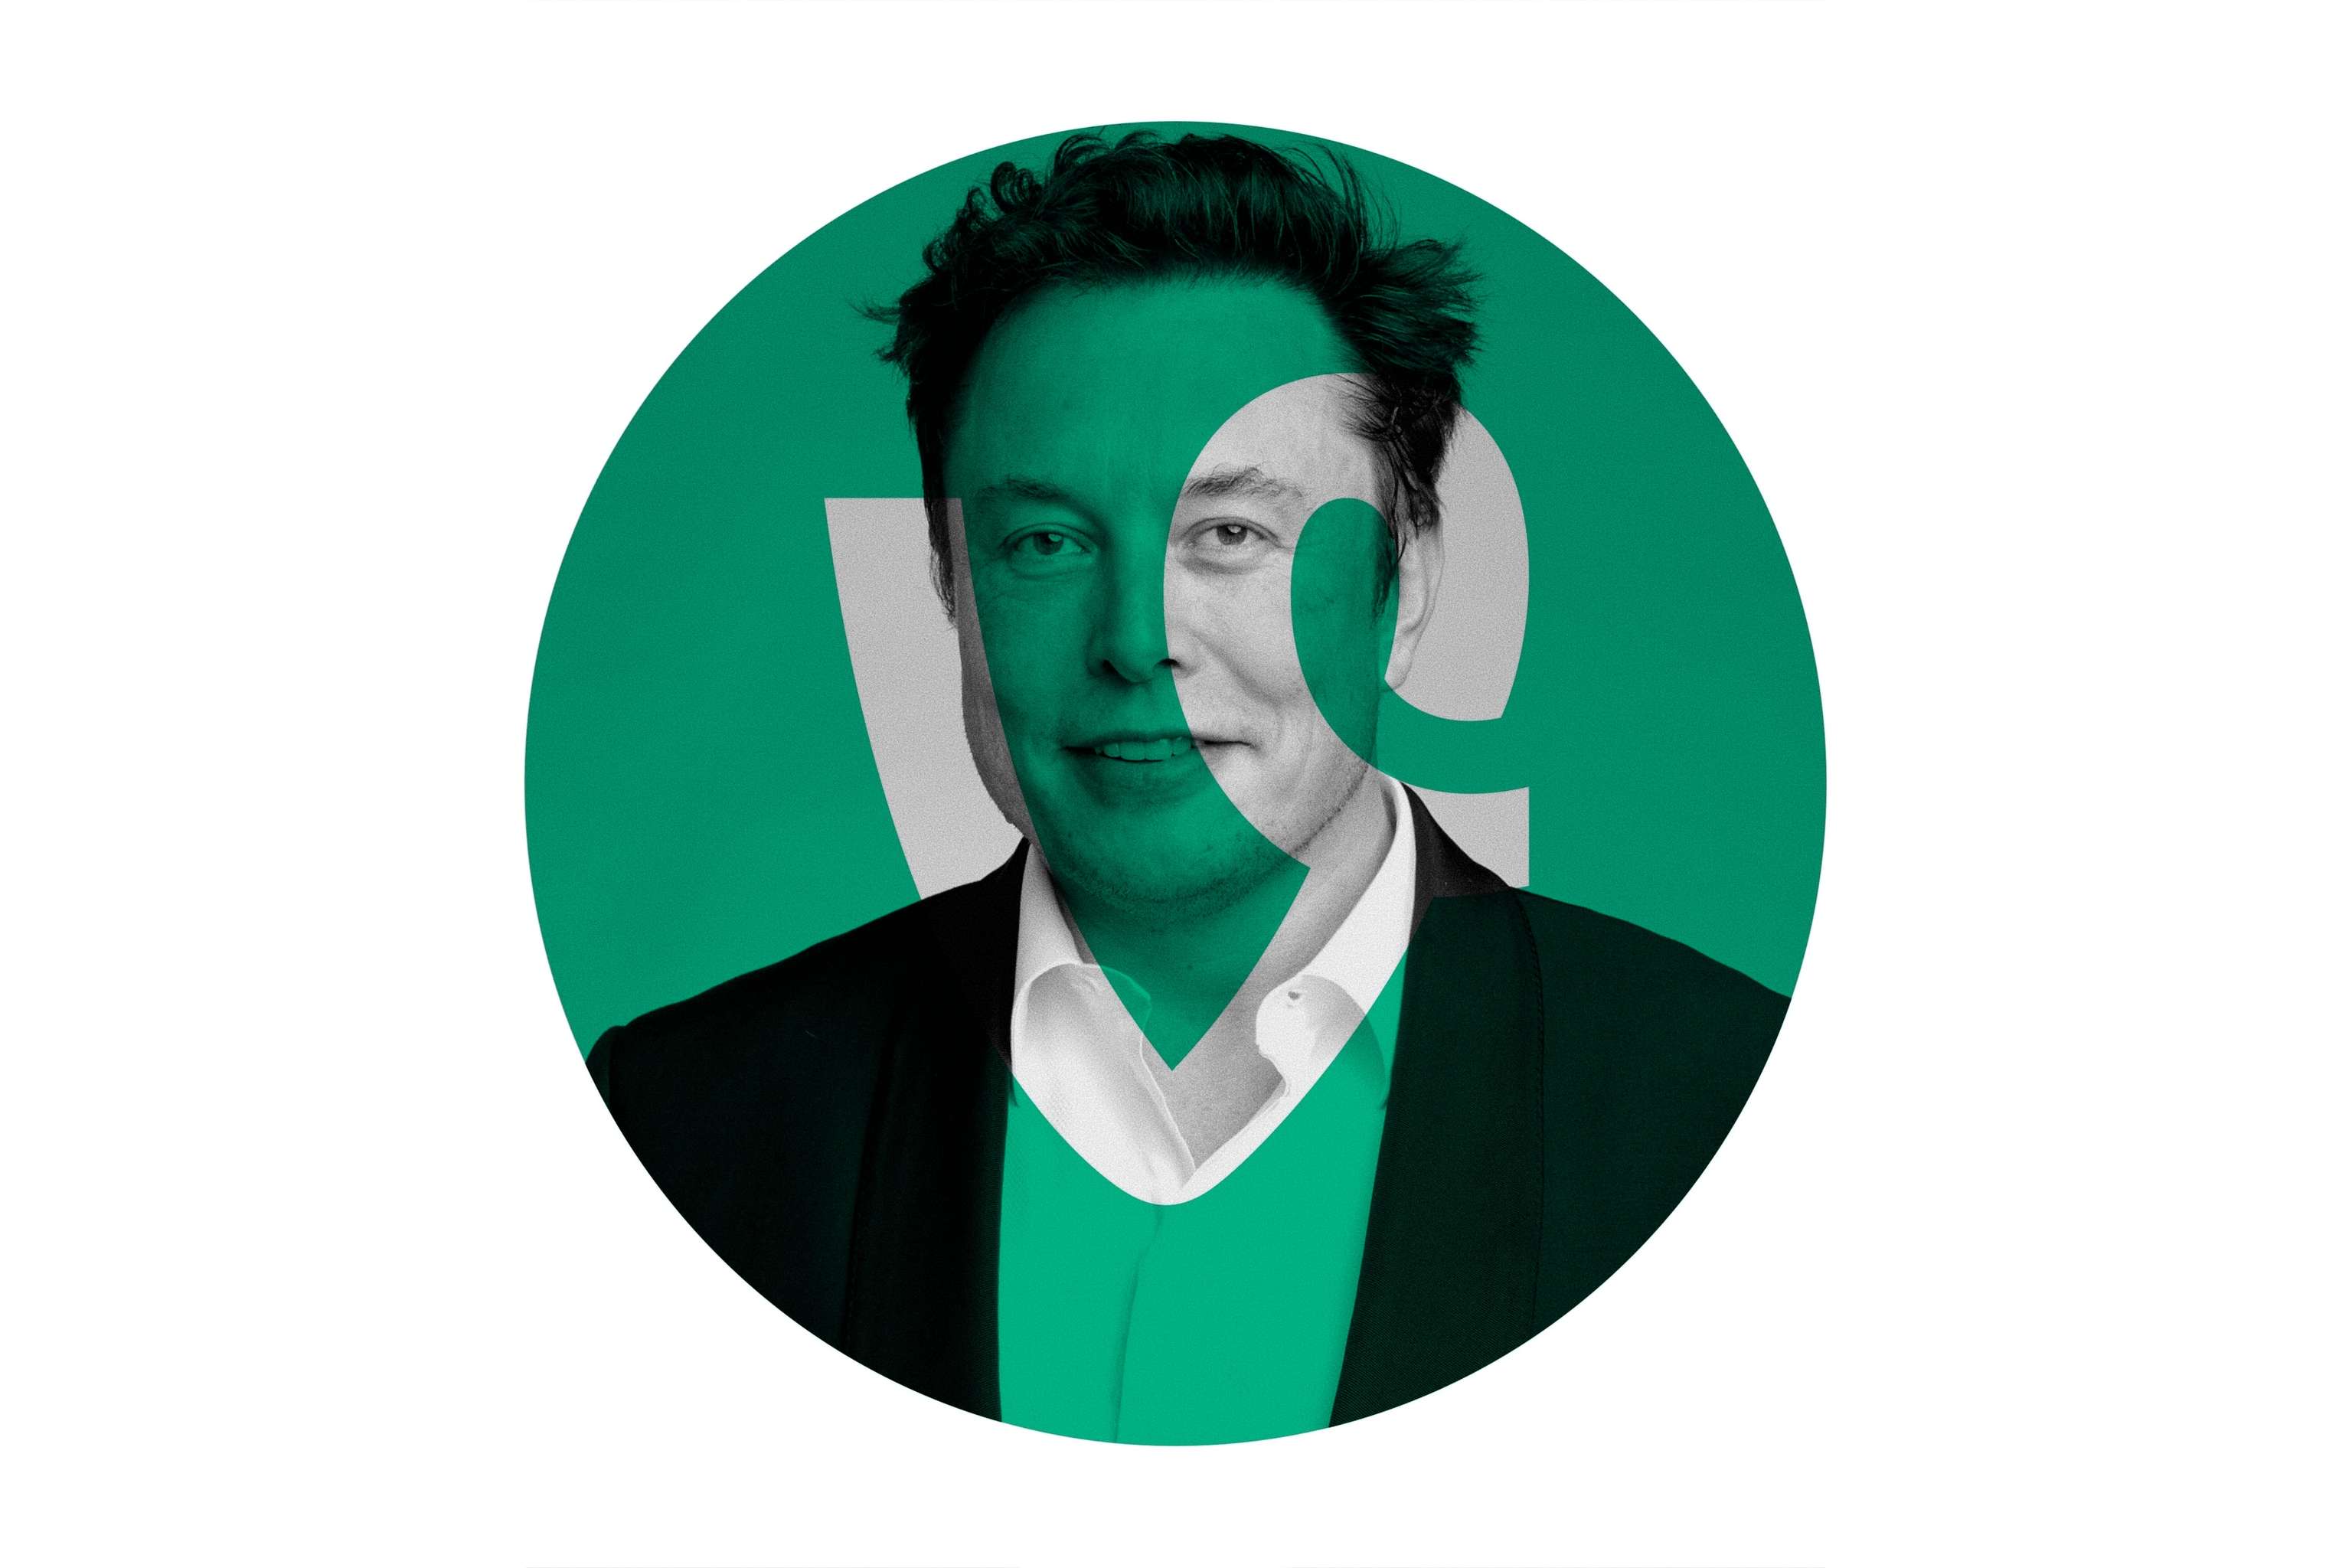 Elon Musk quiere resucitar la plataforma de vídeos cortos Vine